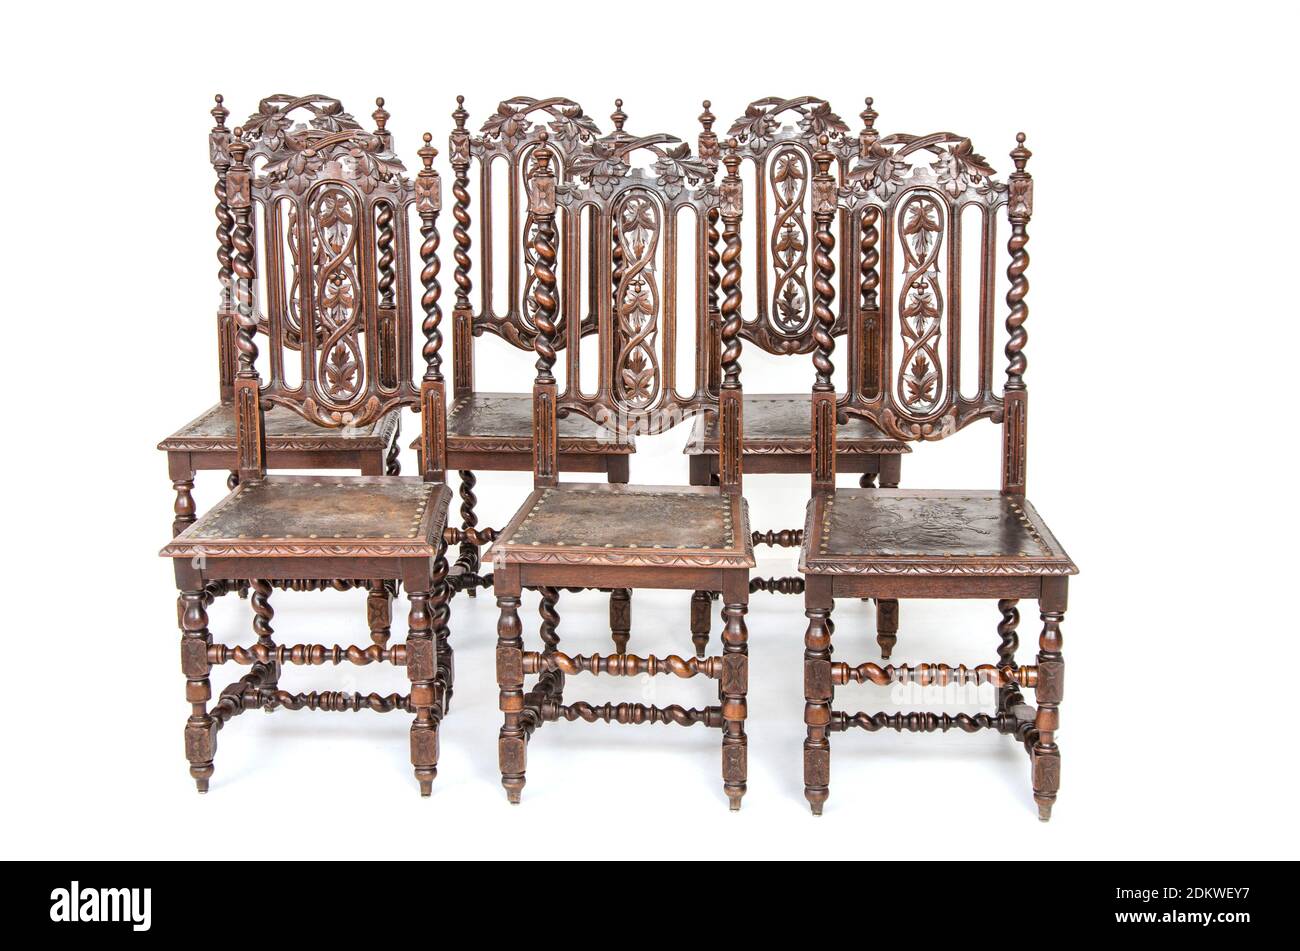 Gruppe von altmodischen Holzstühlen im gotischen Stil auf weißem Hintergrund. Stockfoto